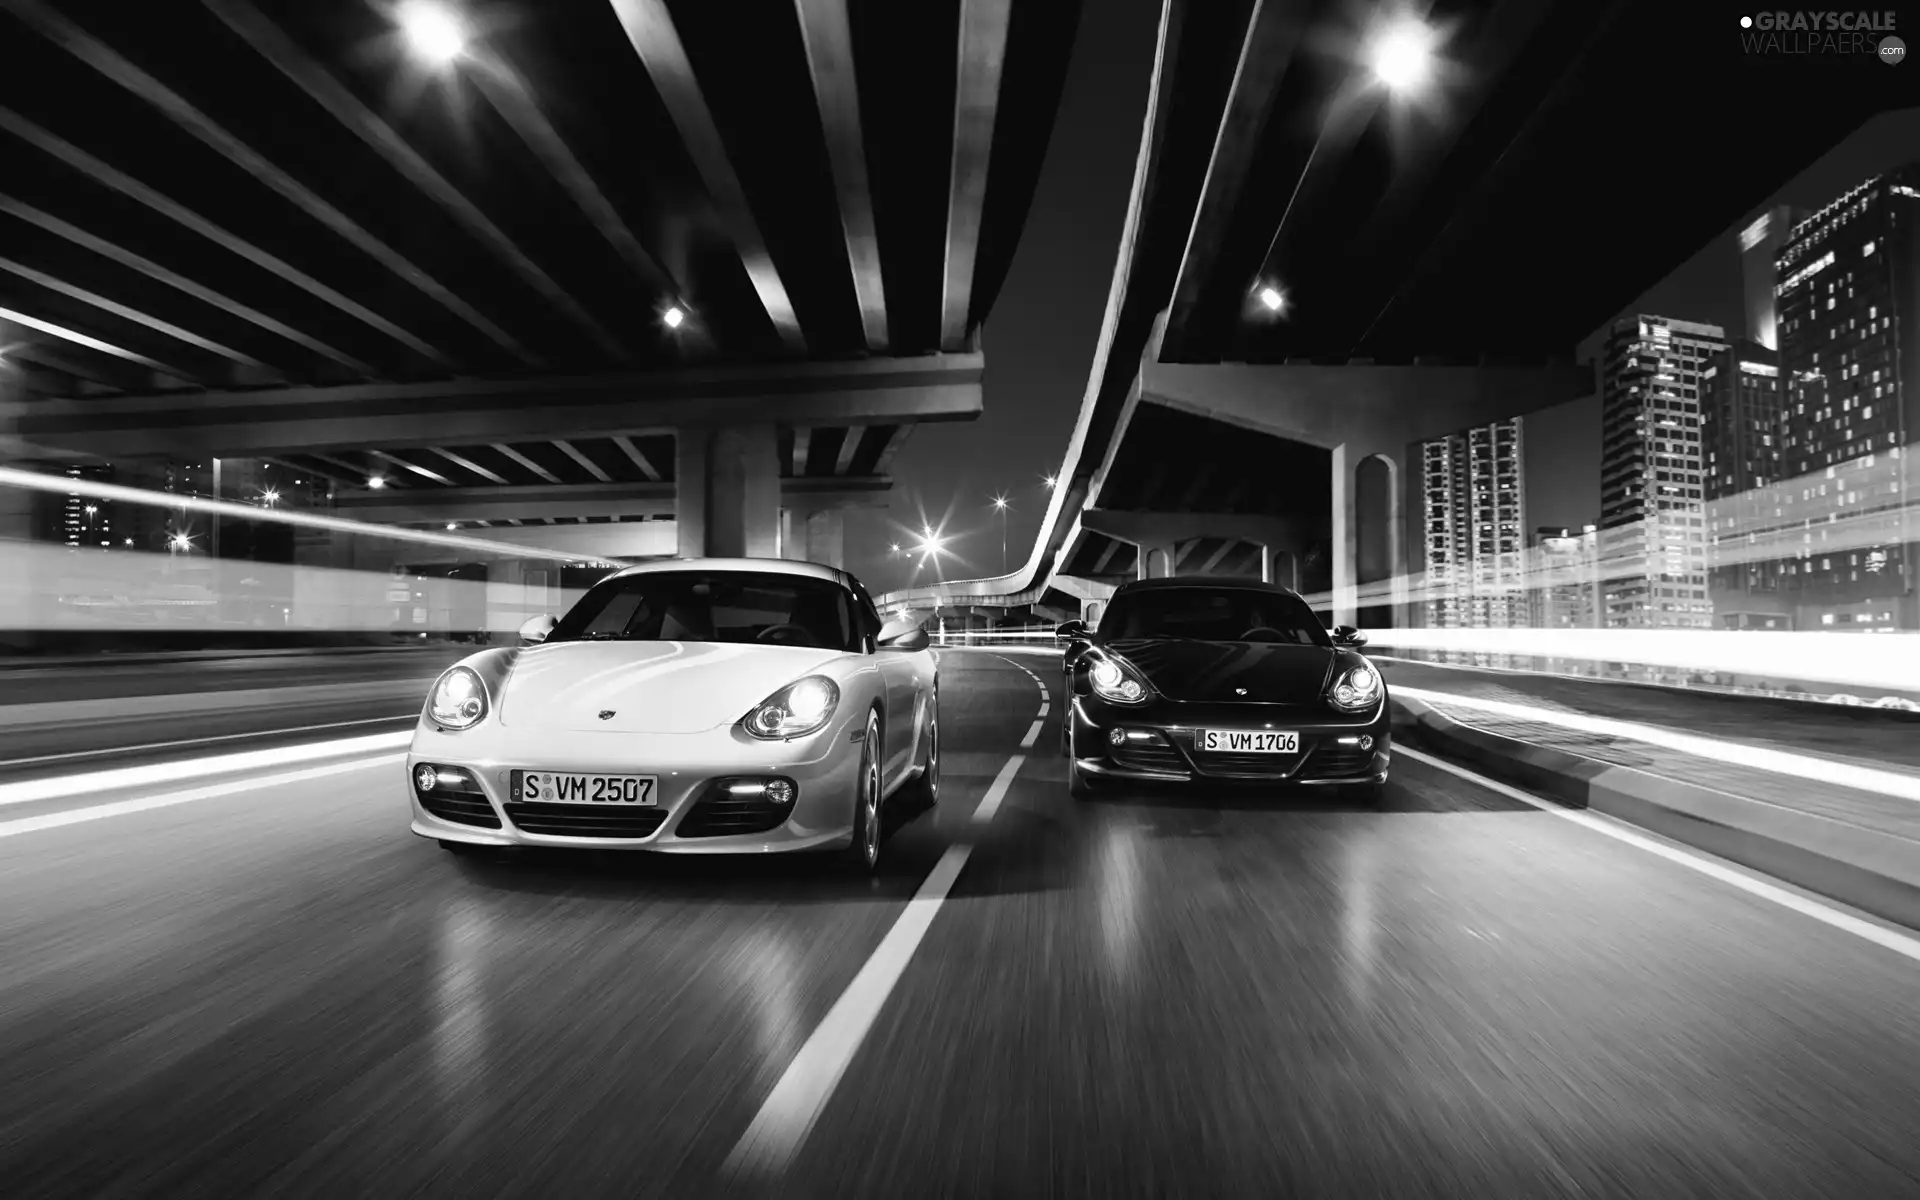 Two cars, Porsche Cayman